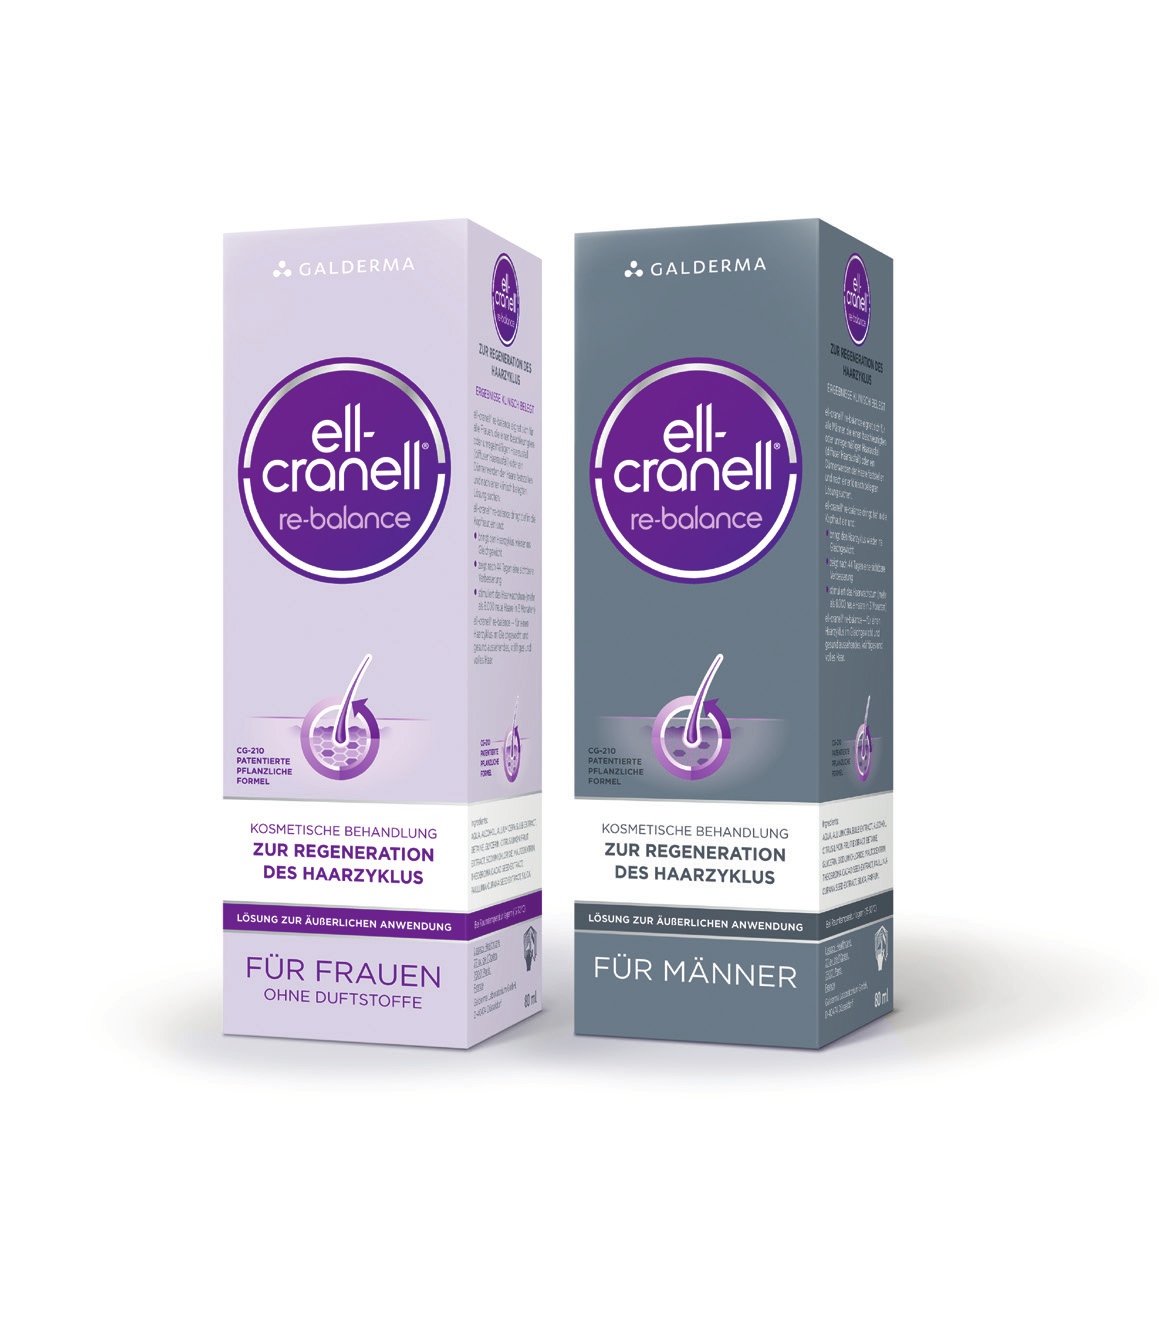 Die neue Kraft bei Haarausfall: Ell-Cranell re-balance So hilft Ell-Cranell re-balance STÄRKT die Widerstandskraft der Haarwurzeln gegen innere und äußere Stressfaktoren.